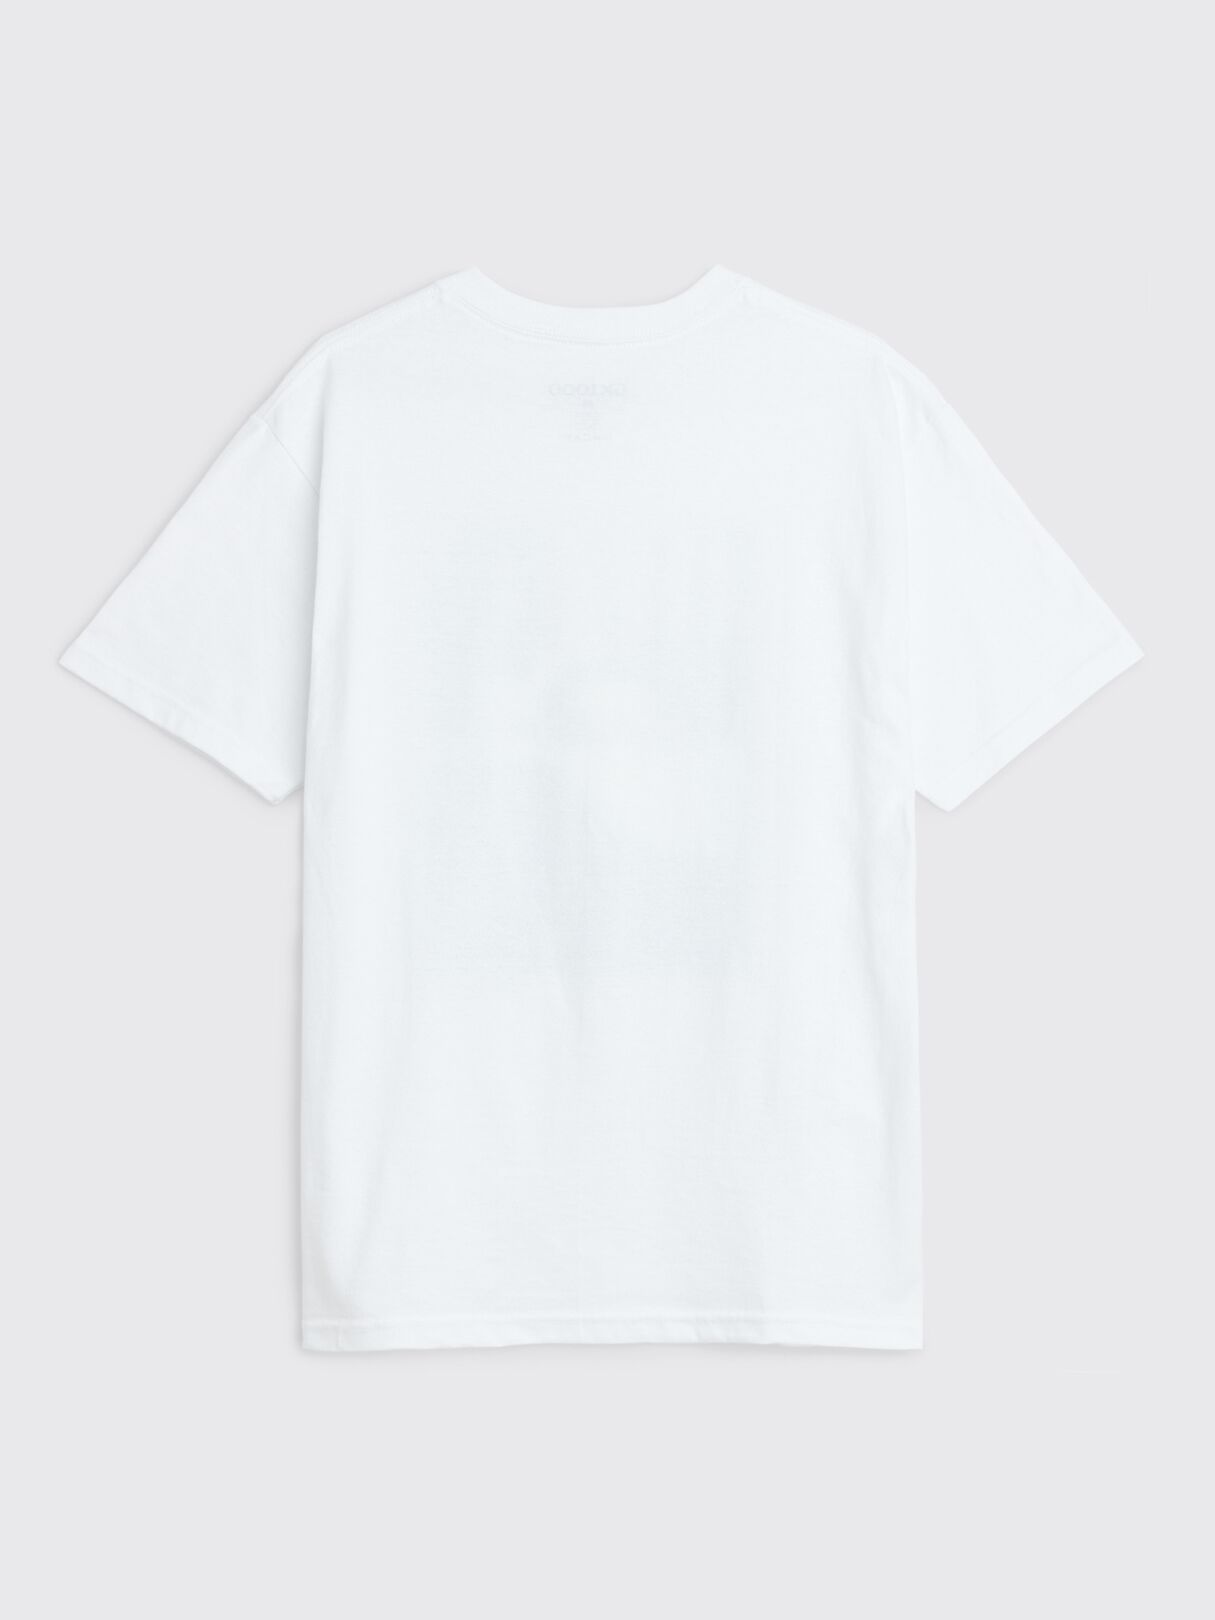 Très Bien - GX1000 Buck T-shirt White